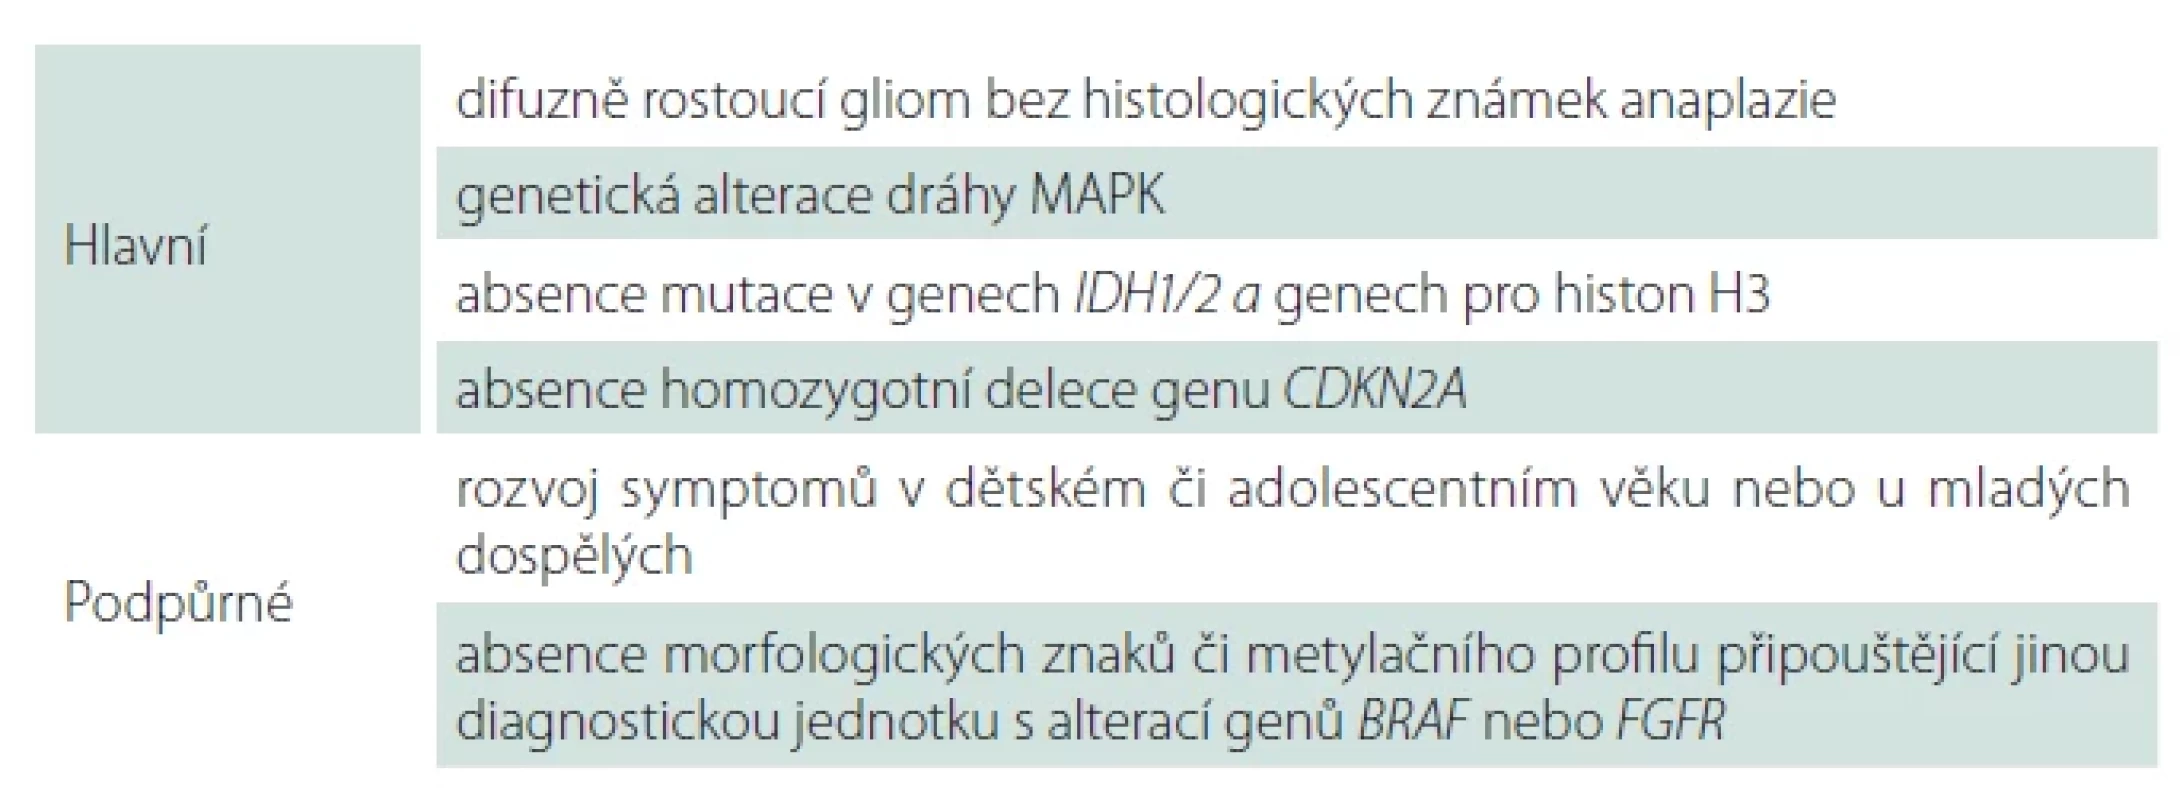 Diagnostická kritéria pro difuzní low-grade gliom s alterací dráhy MAPK dle WHO 2021.